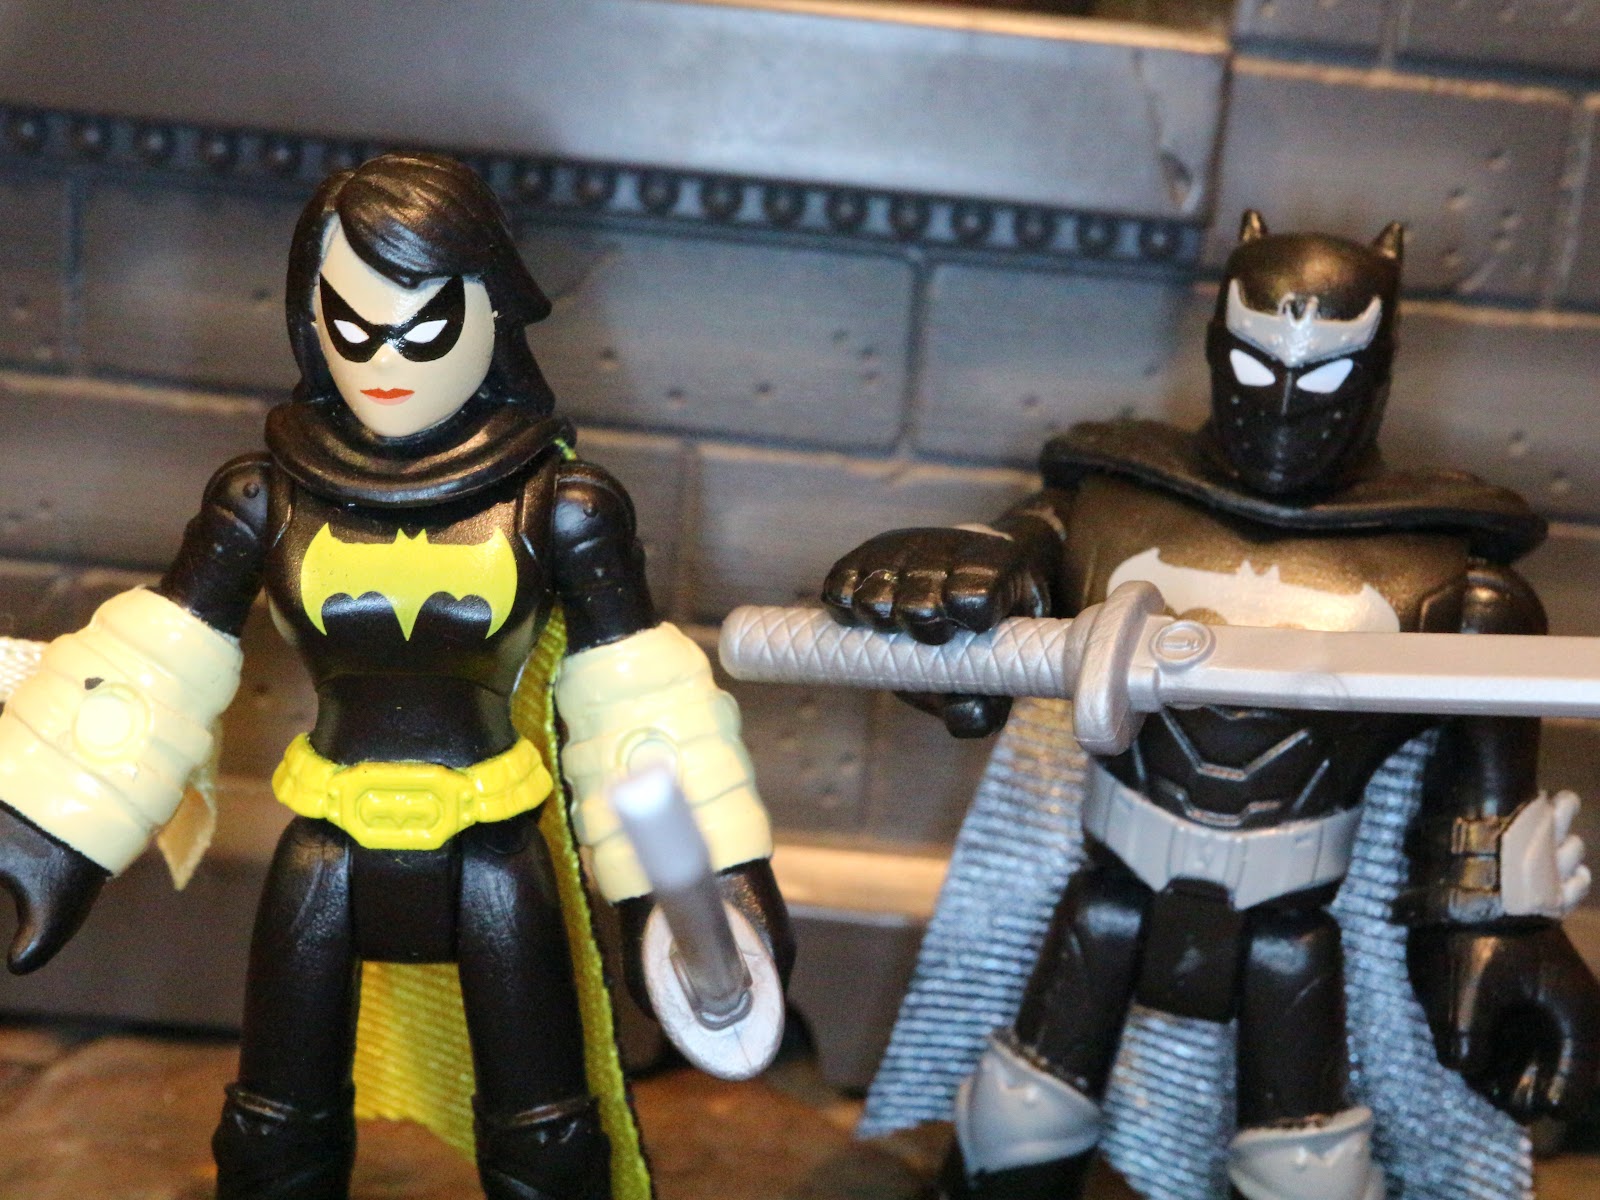 Lot 2 Fisher-Price Imaginext DC Super Friends Action Figures batgirl batman toys 